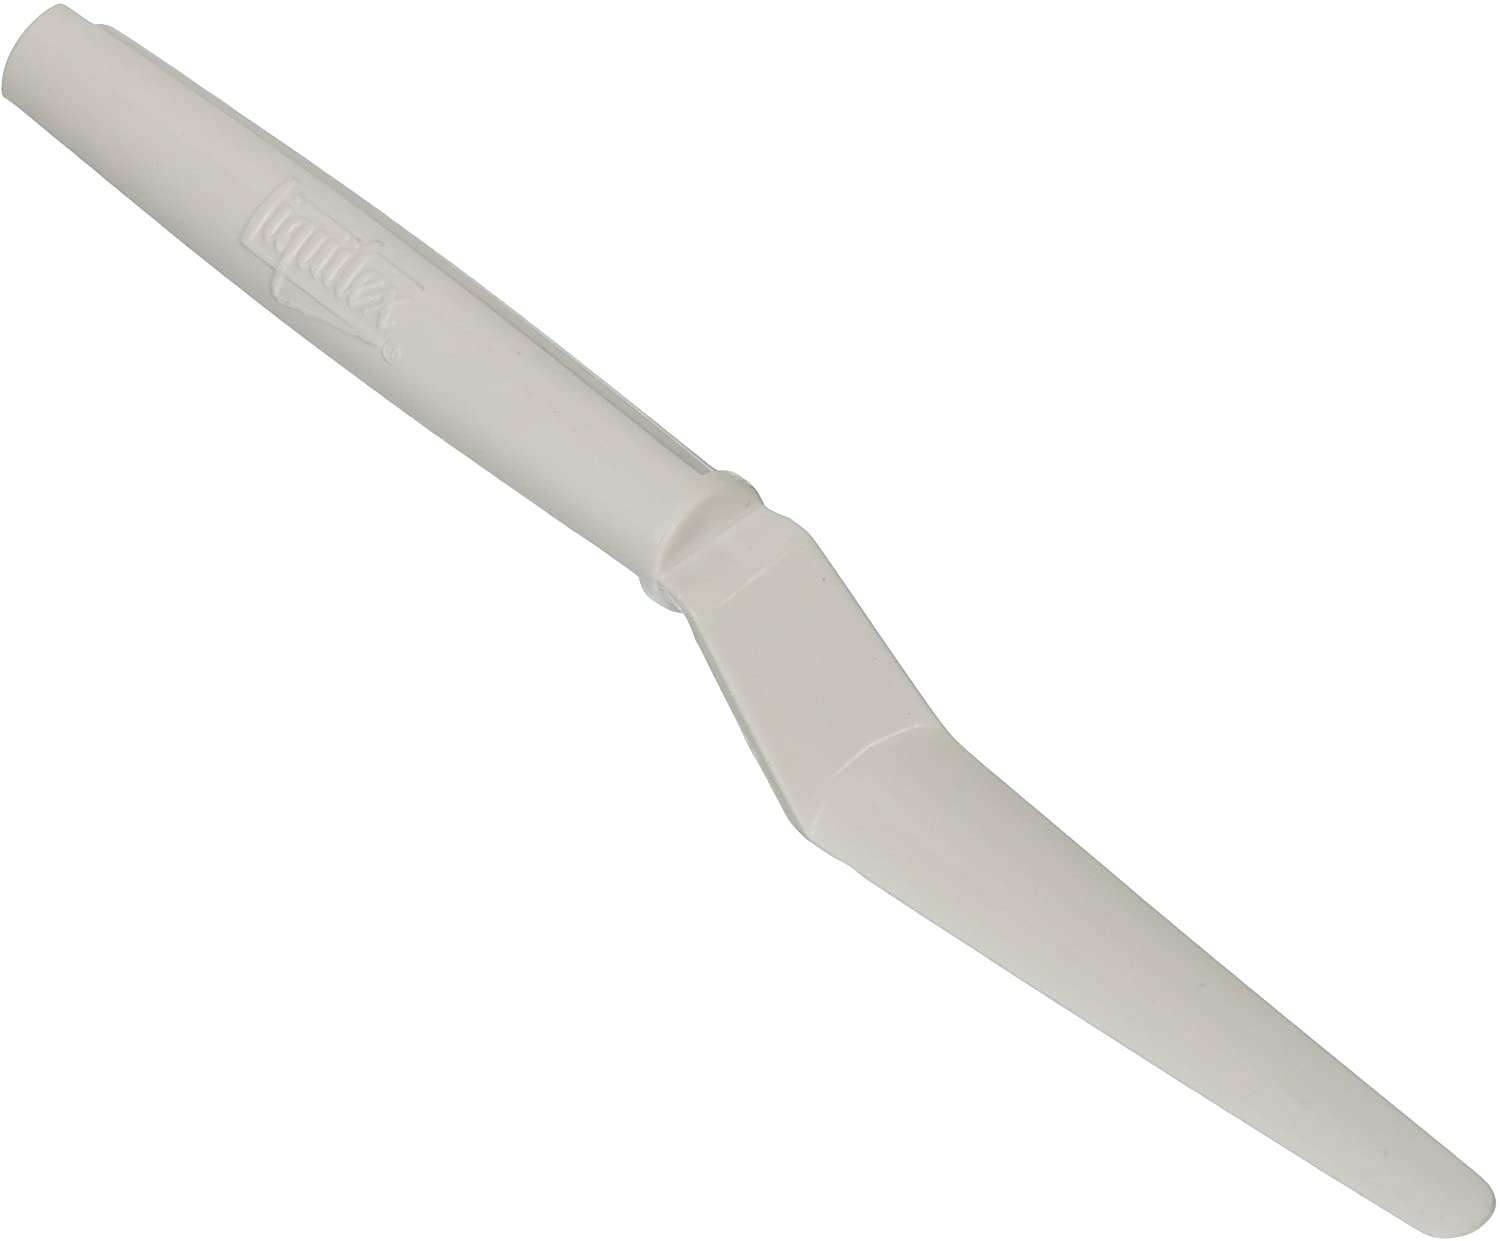  Plastic Palette Knife